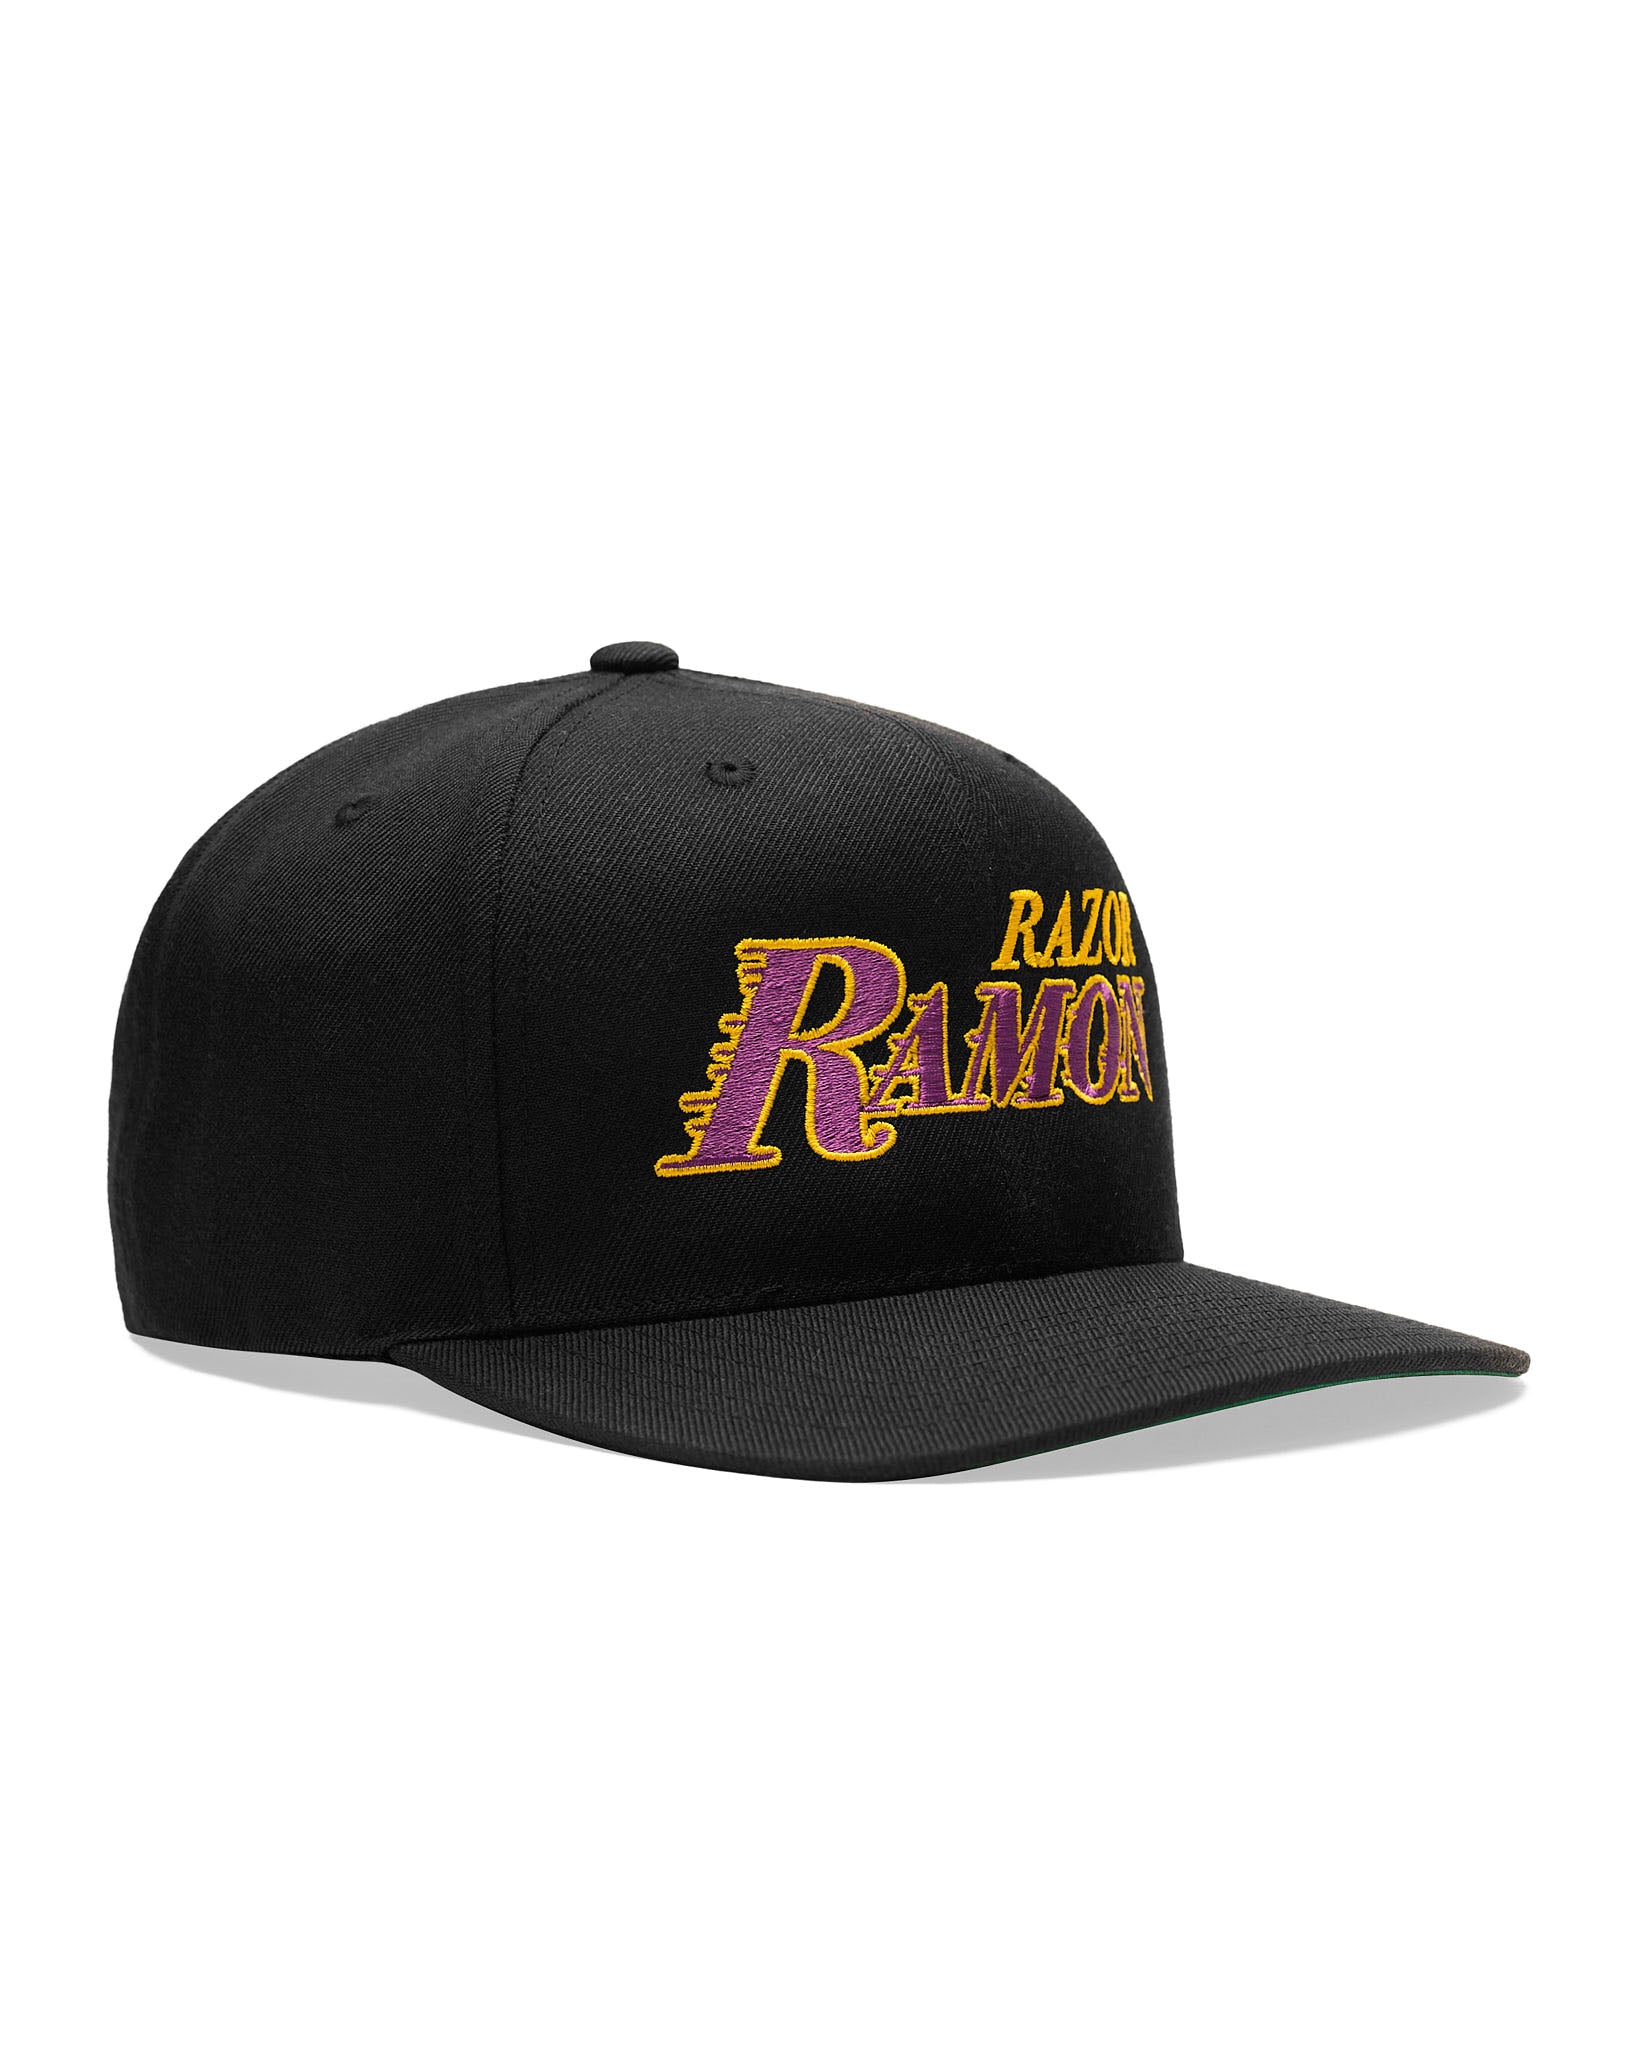 Razor Ramon Logo Snapback Hat